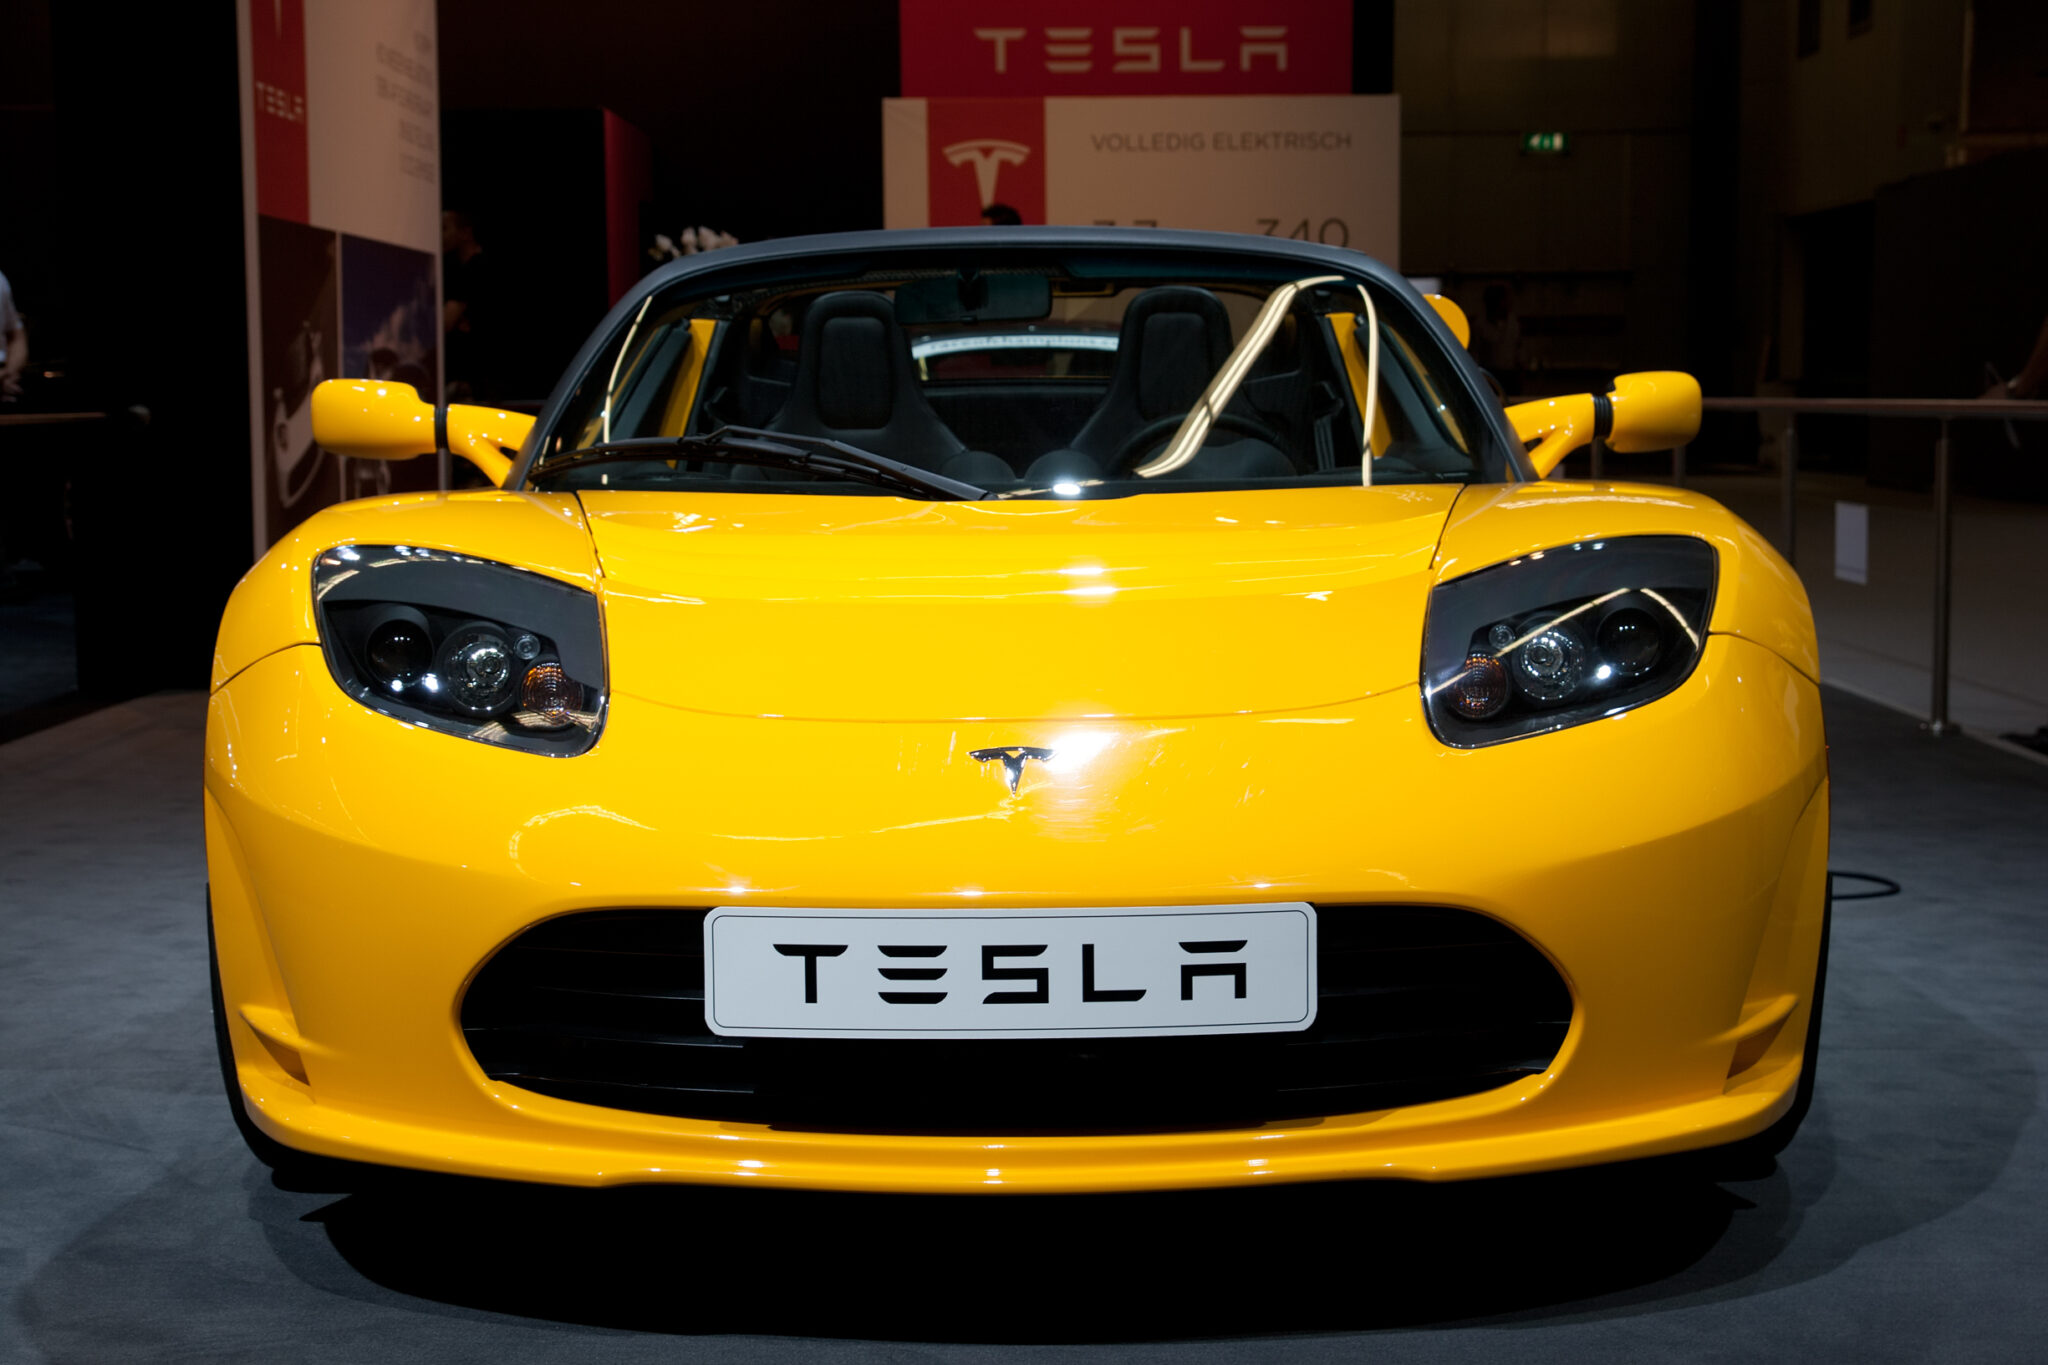 Tesla Roadster VanderWolf Images / Shutterstock.com|||||||